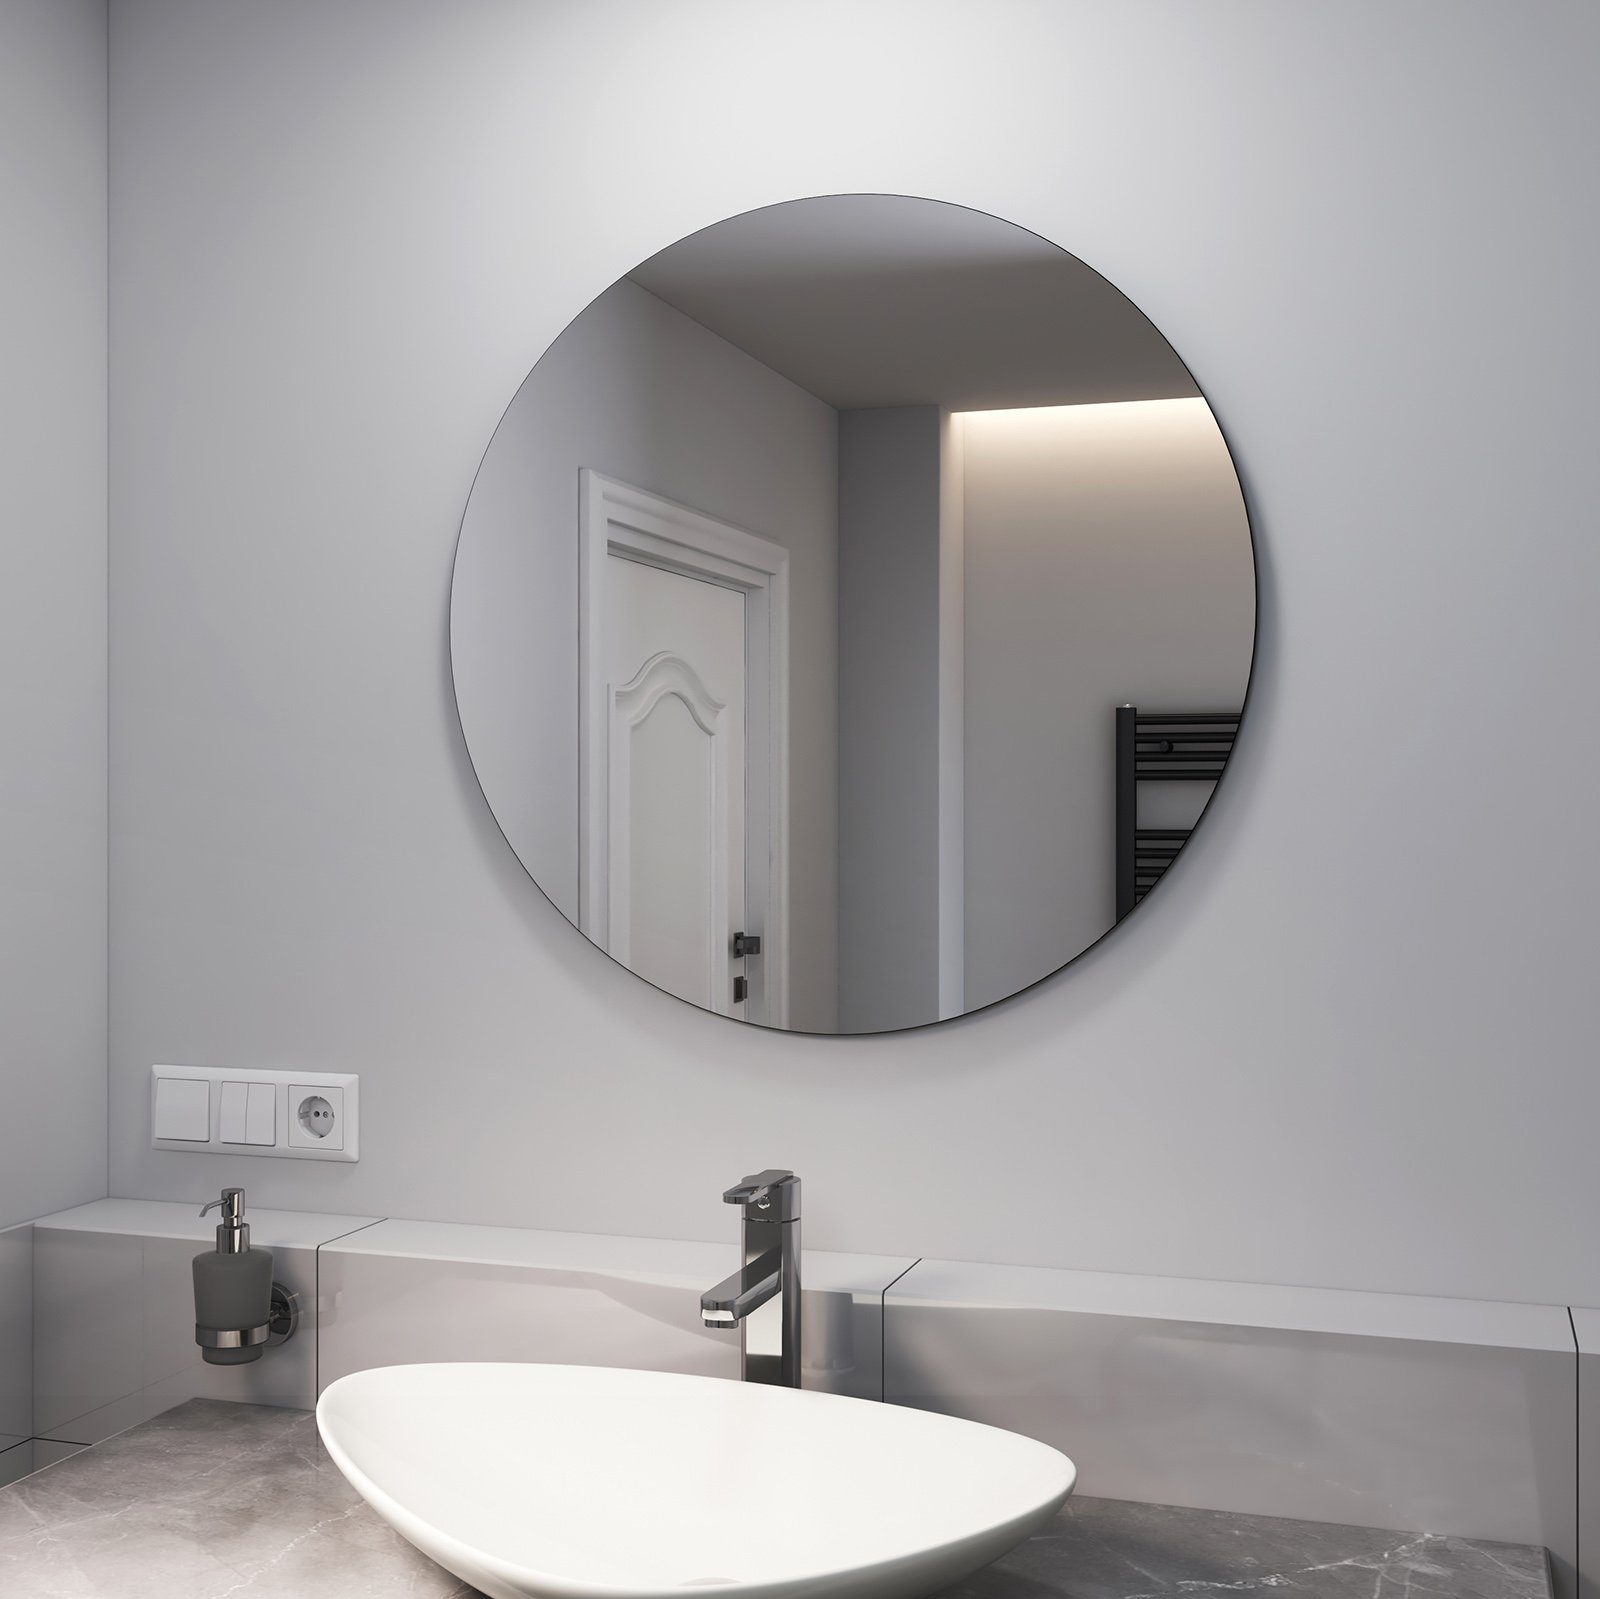  Halbrunder Rahmenloser Spiegel, Badezimmer Wandspiegel